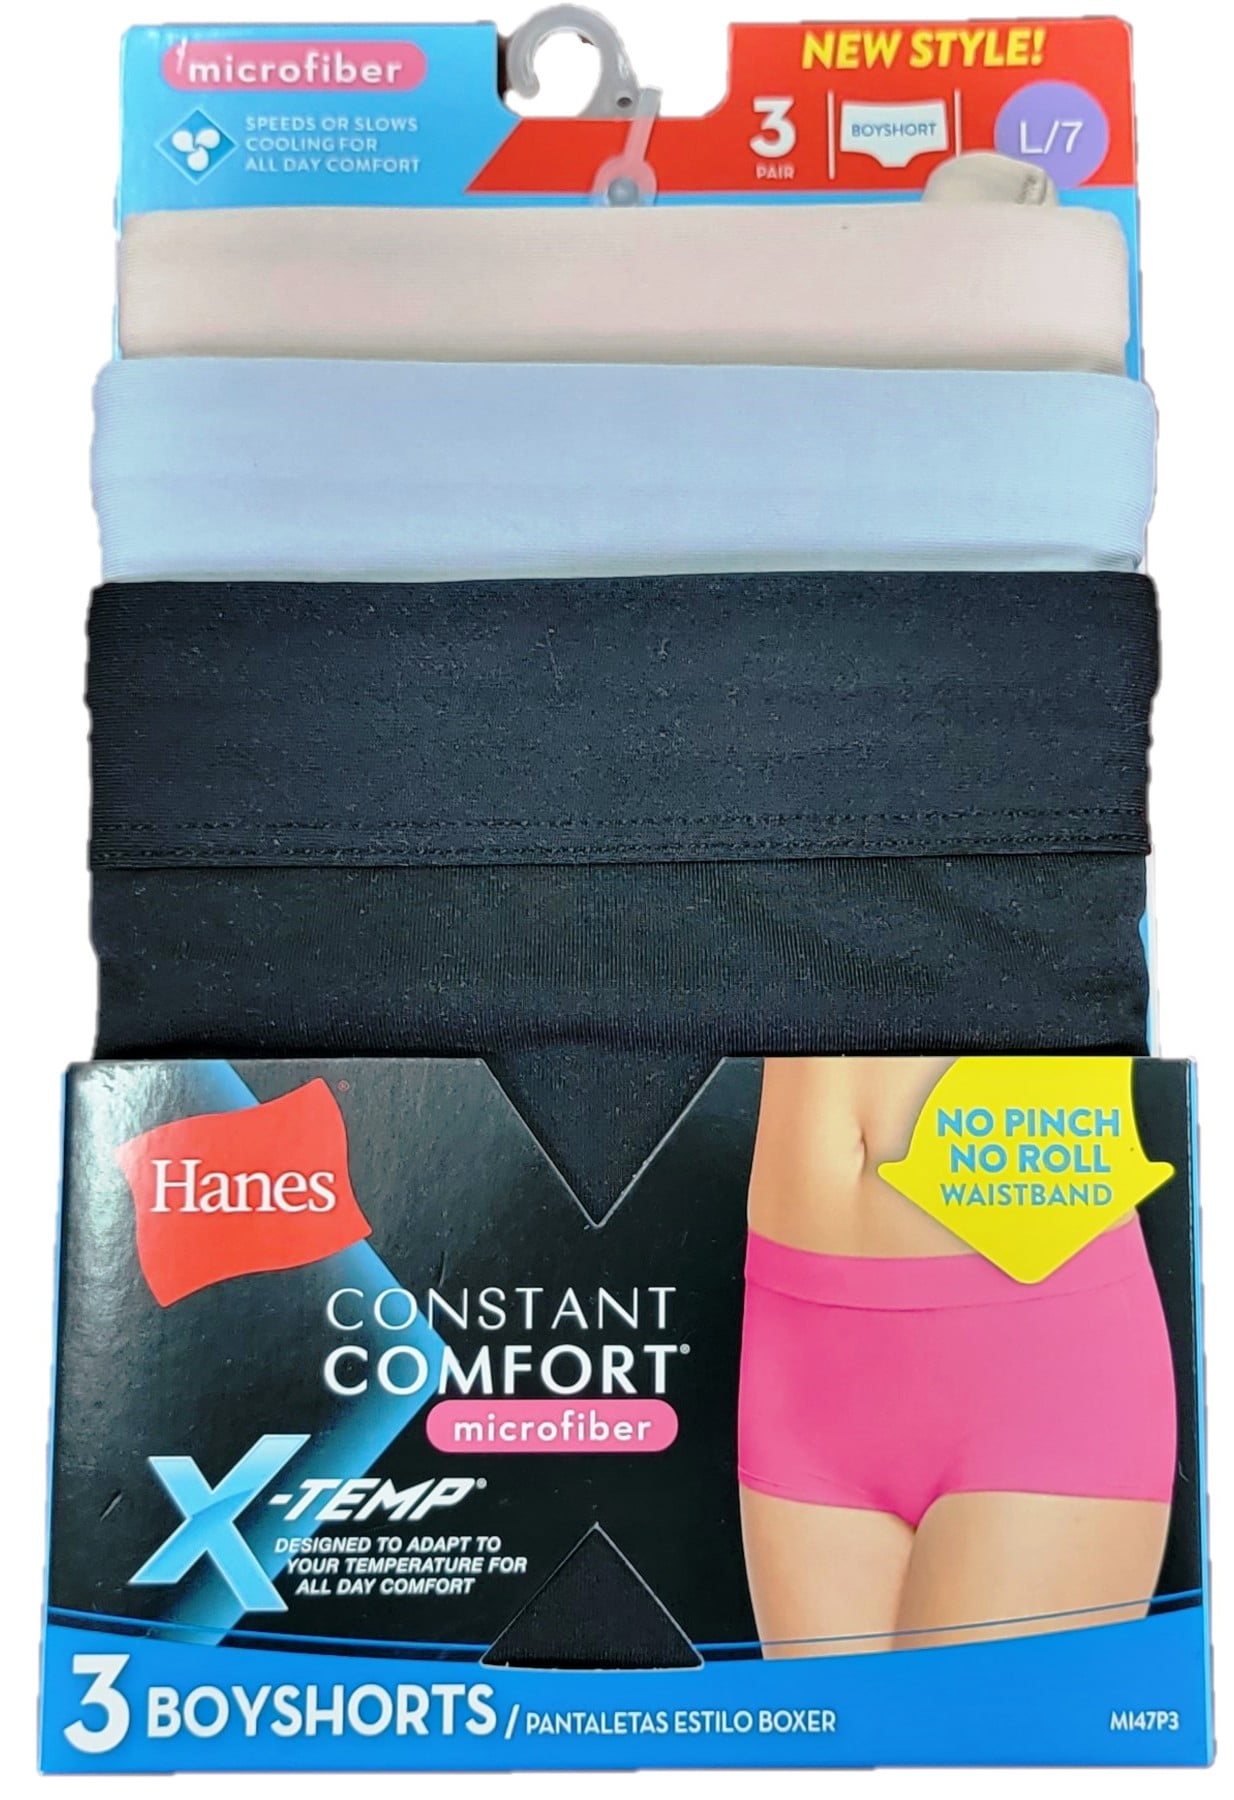 Hanes Women's 3 Pack Constant Comfort Microfiber Boyshort